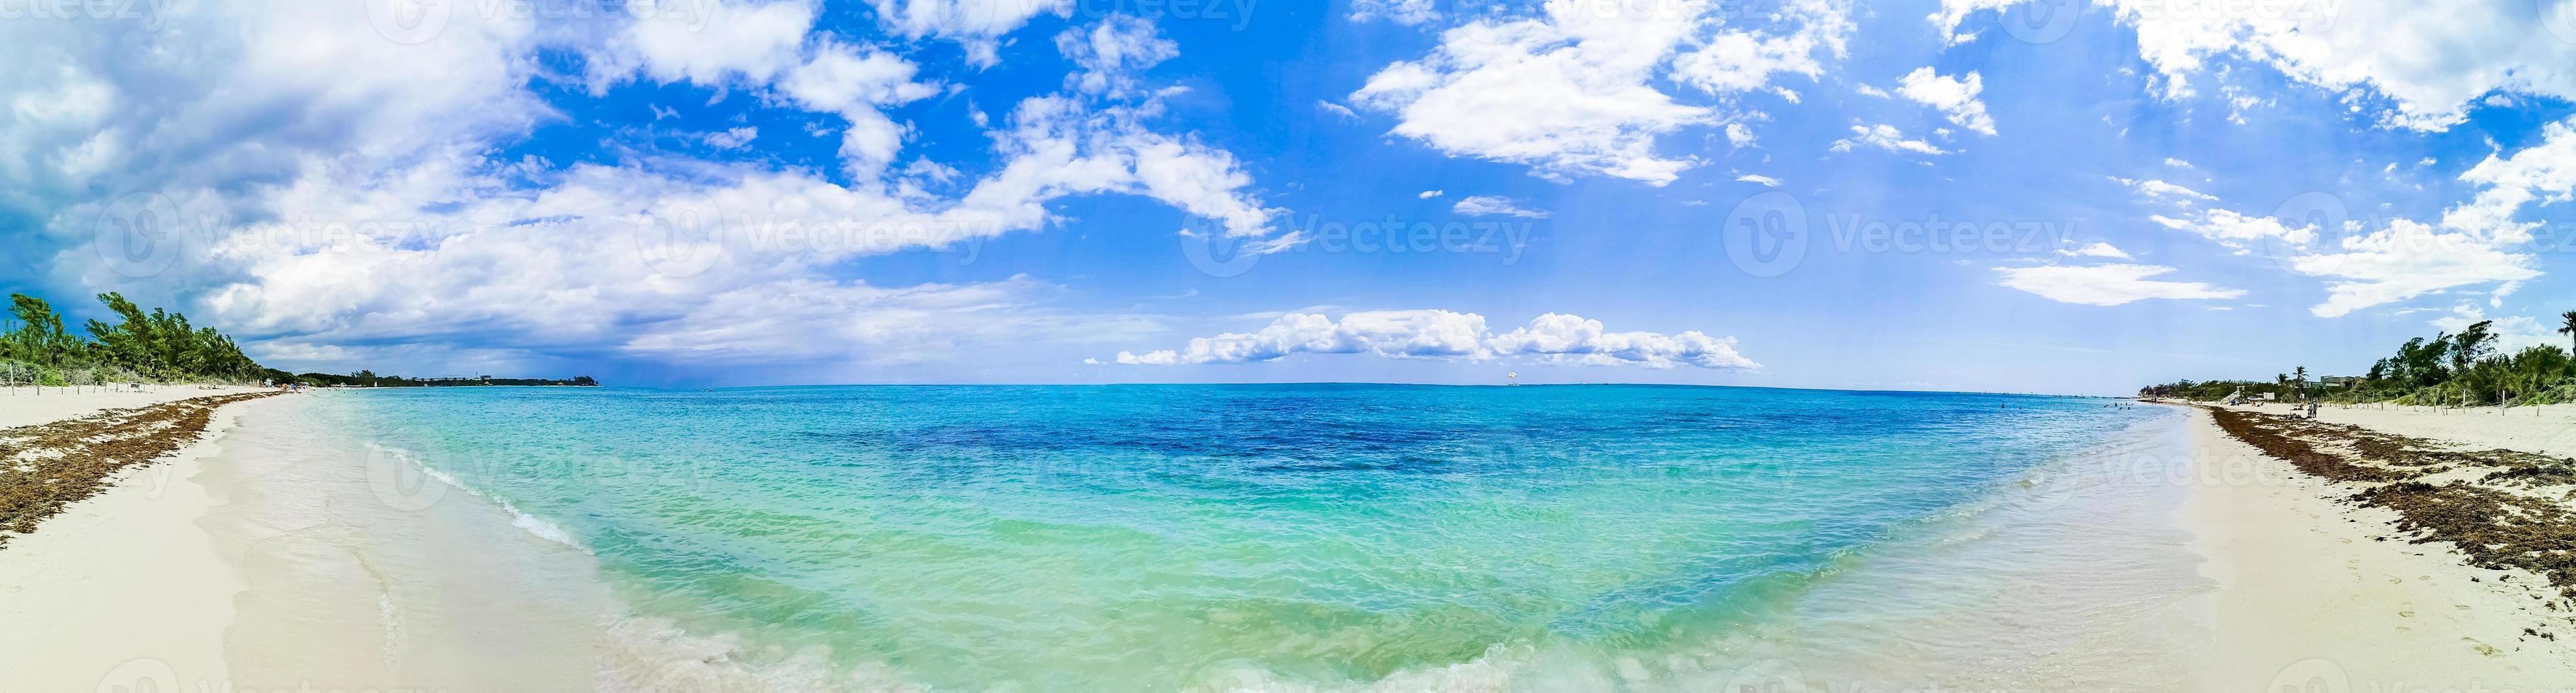 Panorama de la plage tropicale à punta esmeralda, playa del carmen, mexique photo